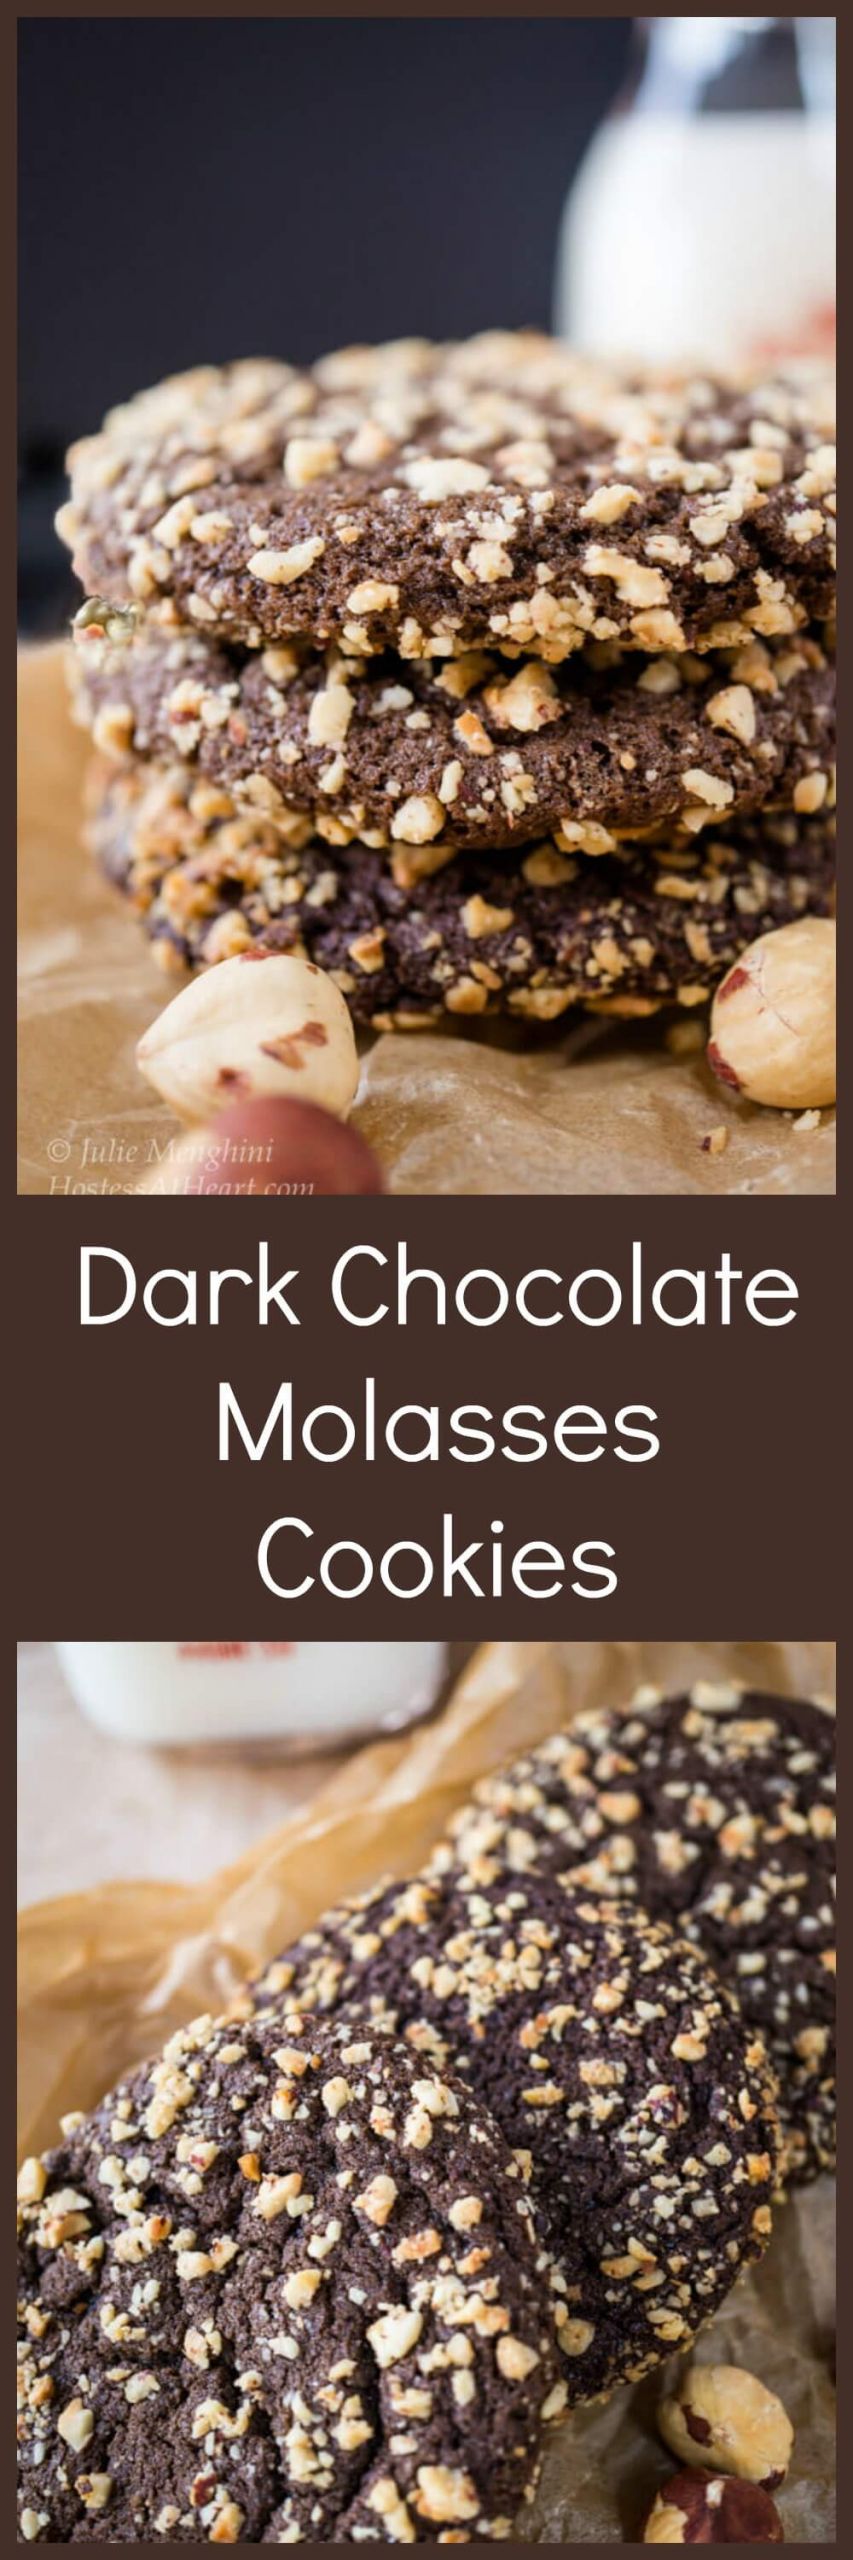 Dark Molasses Cookies
 Dark Chocolate Molasses Cookies